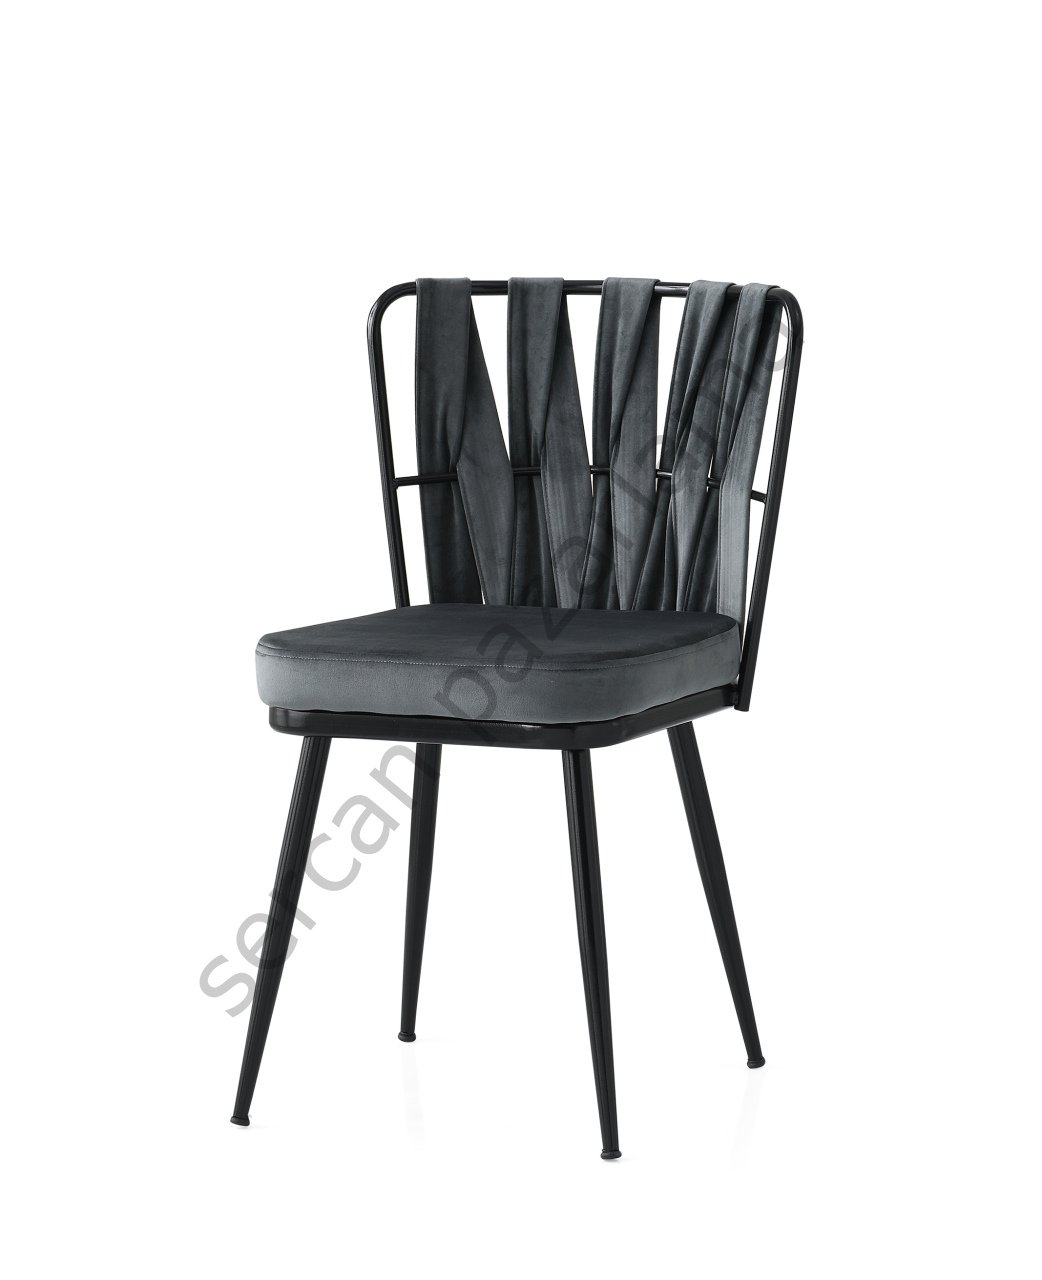 2432 - Örgülü Sandalye - Gri/Siyah